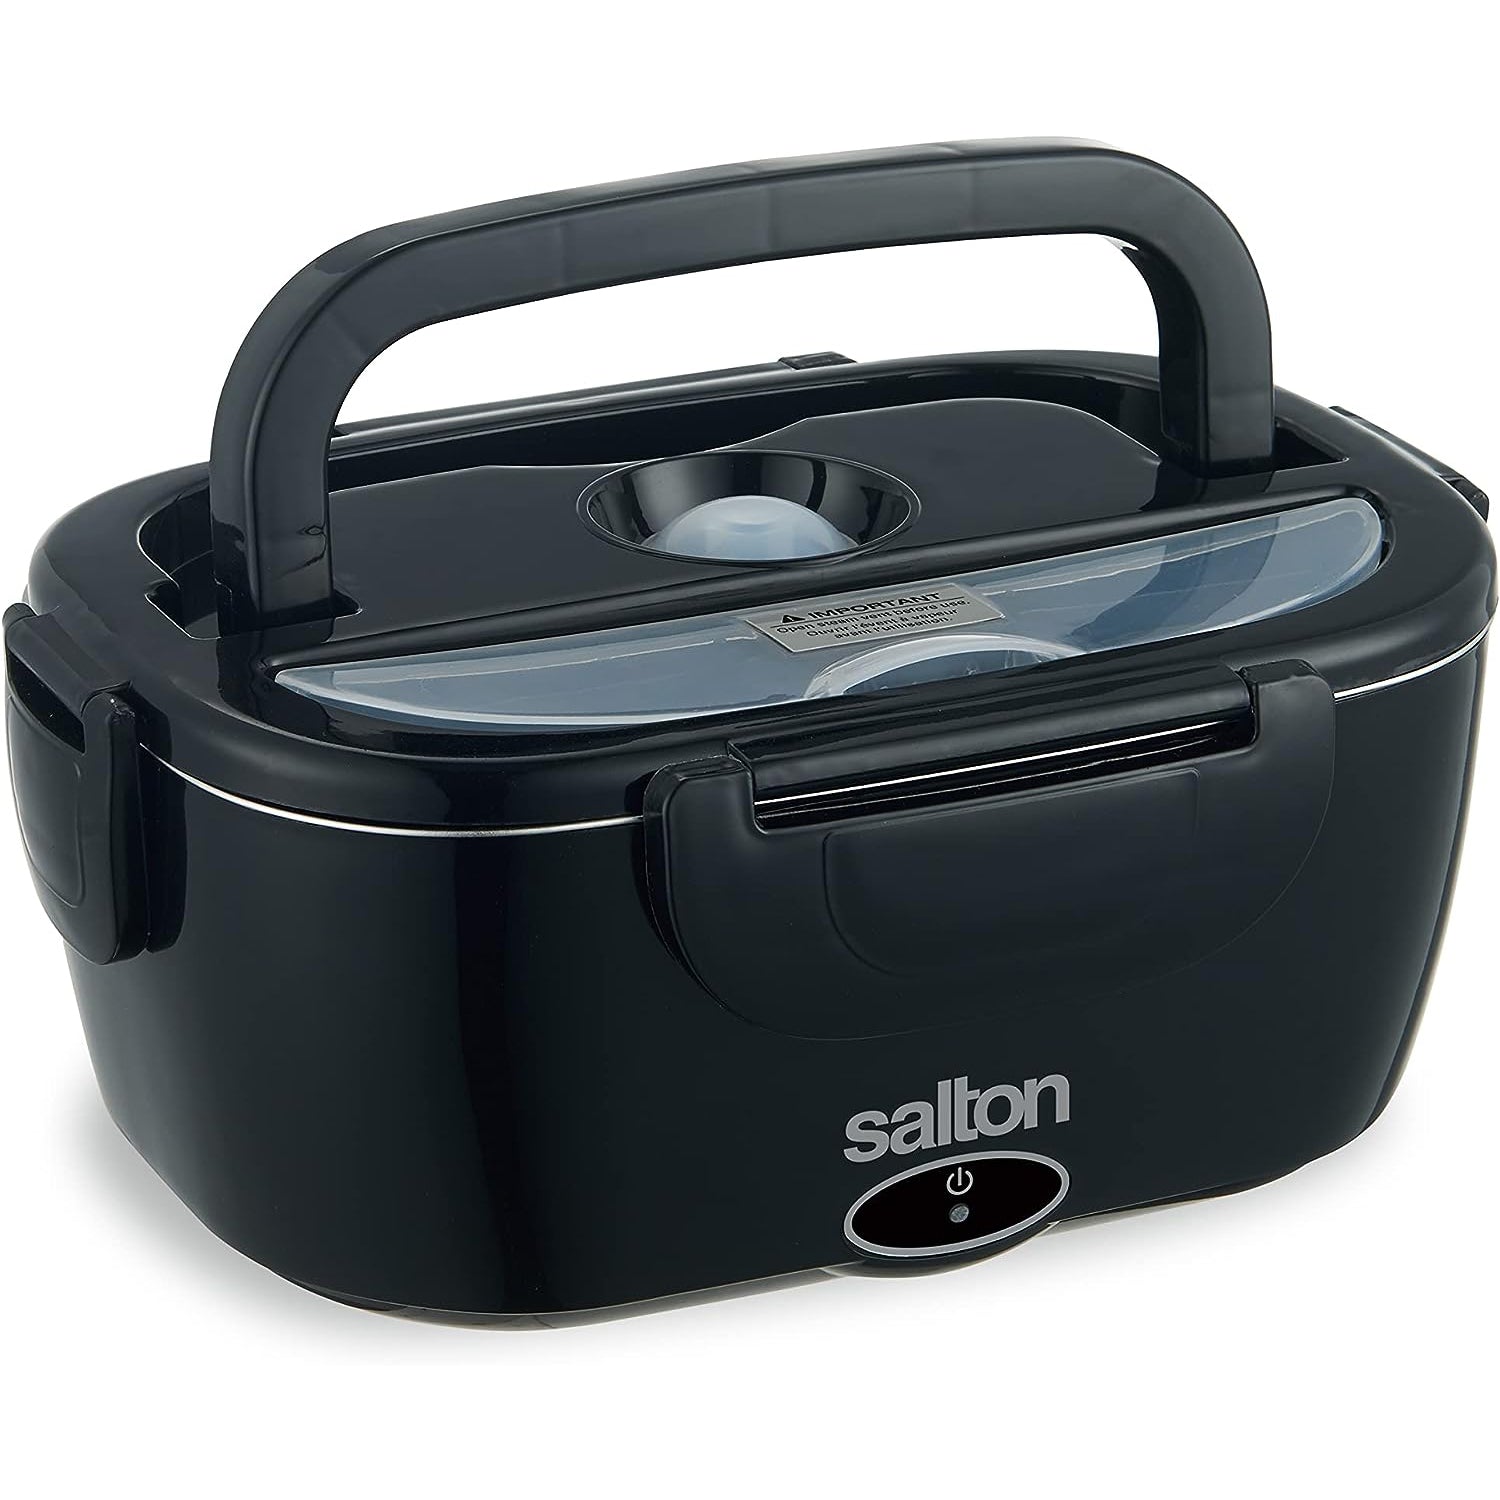 Salton - Boite à Lunch Chauffante Portable, Capacité de 1.5 Litre